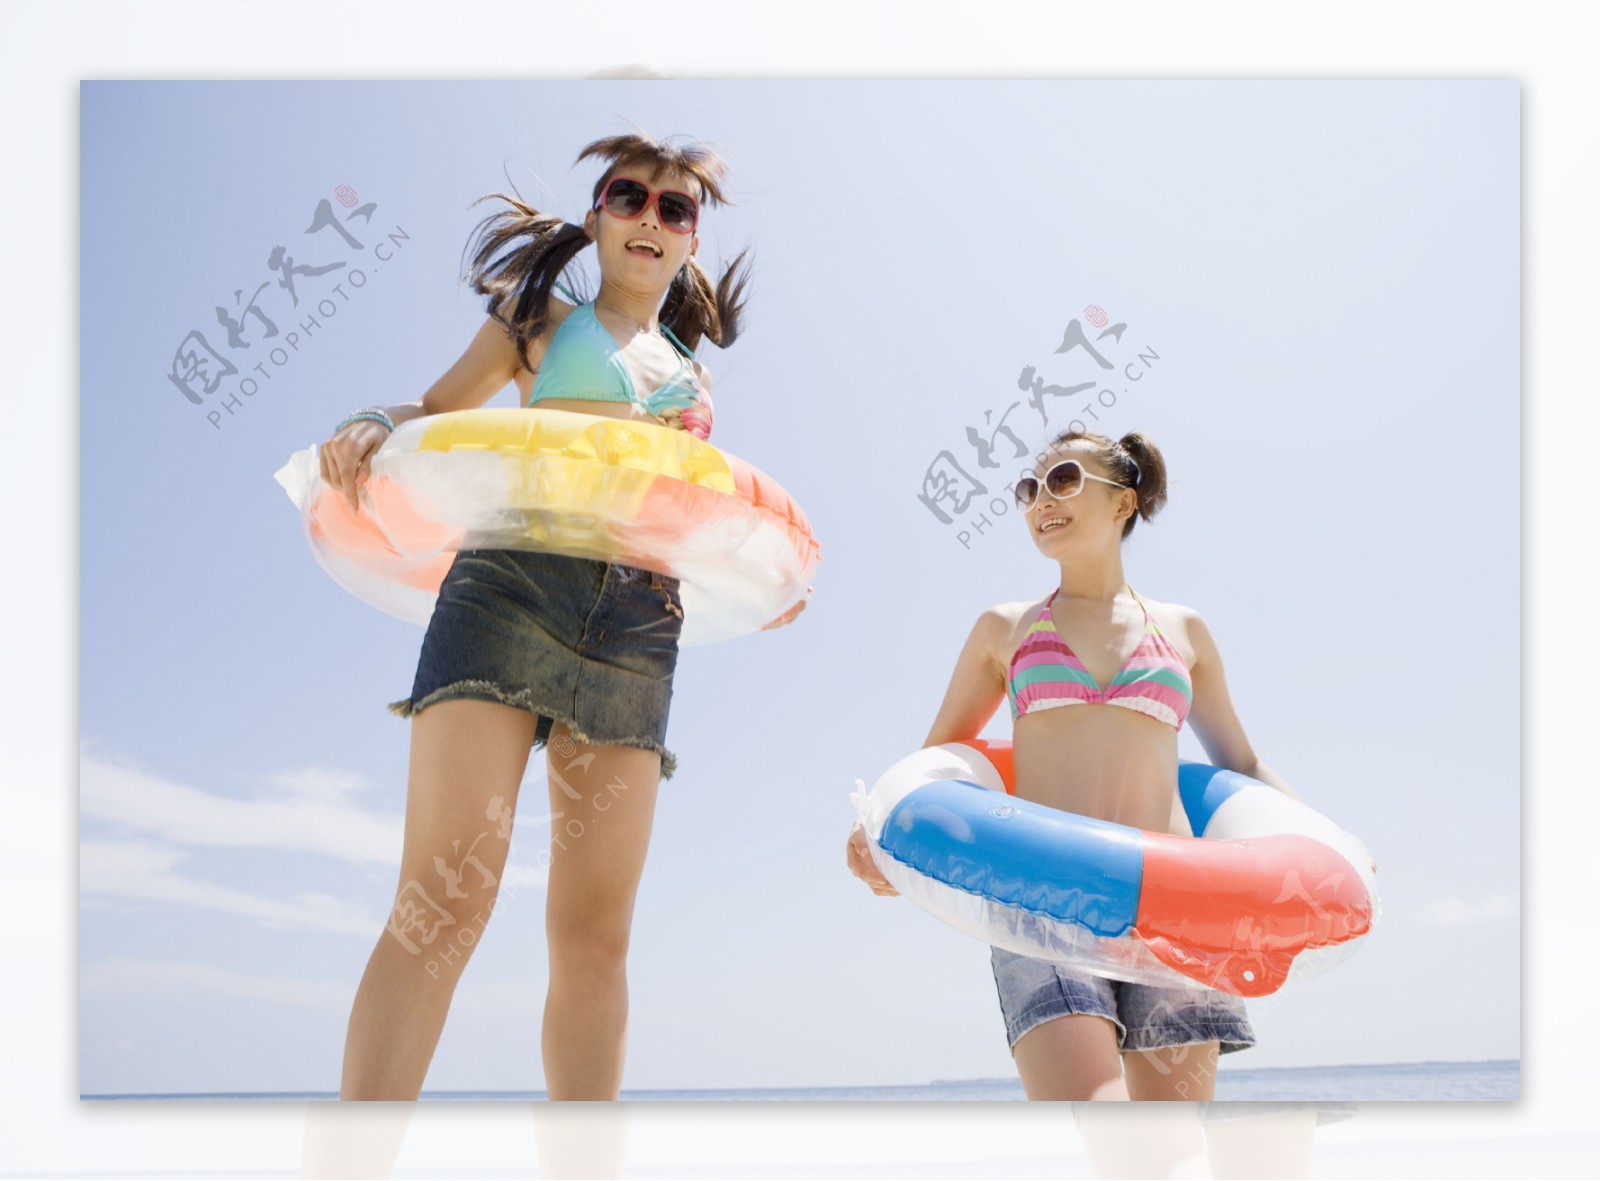 沙滩上戴太阳镜套游泳圈的美少女图片